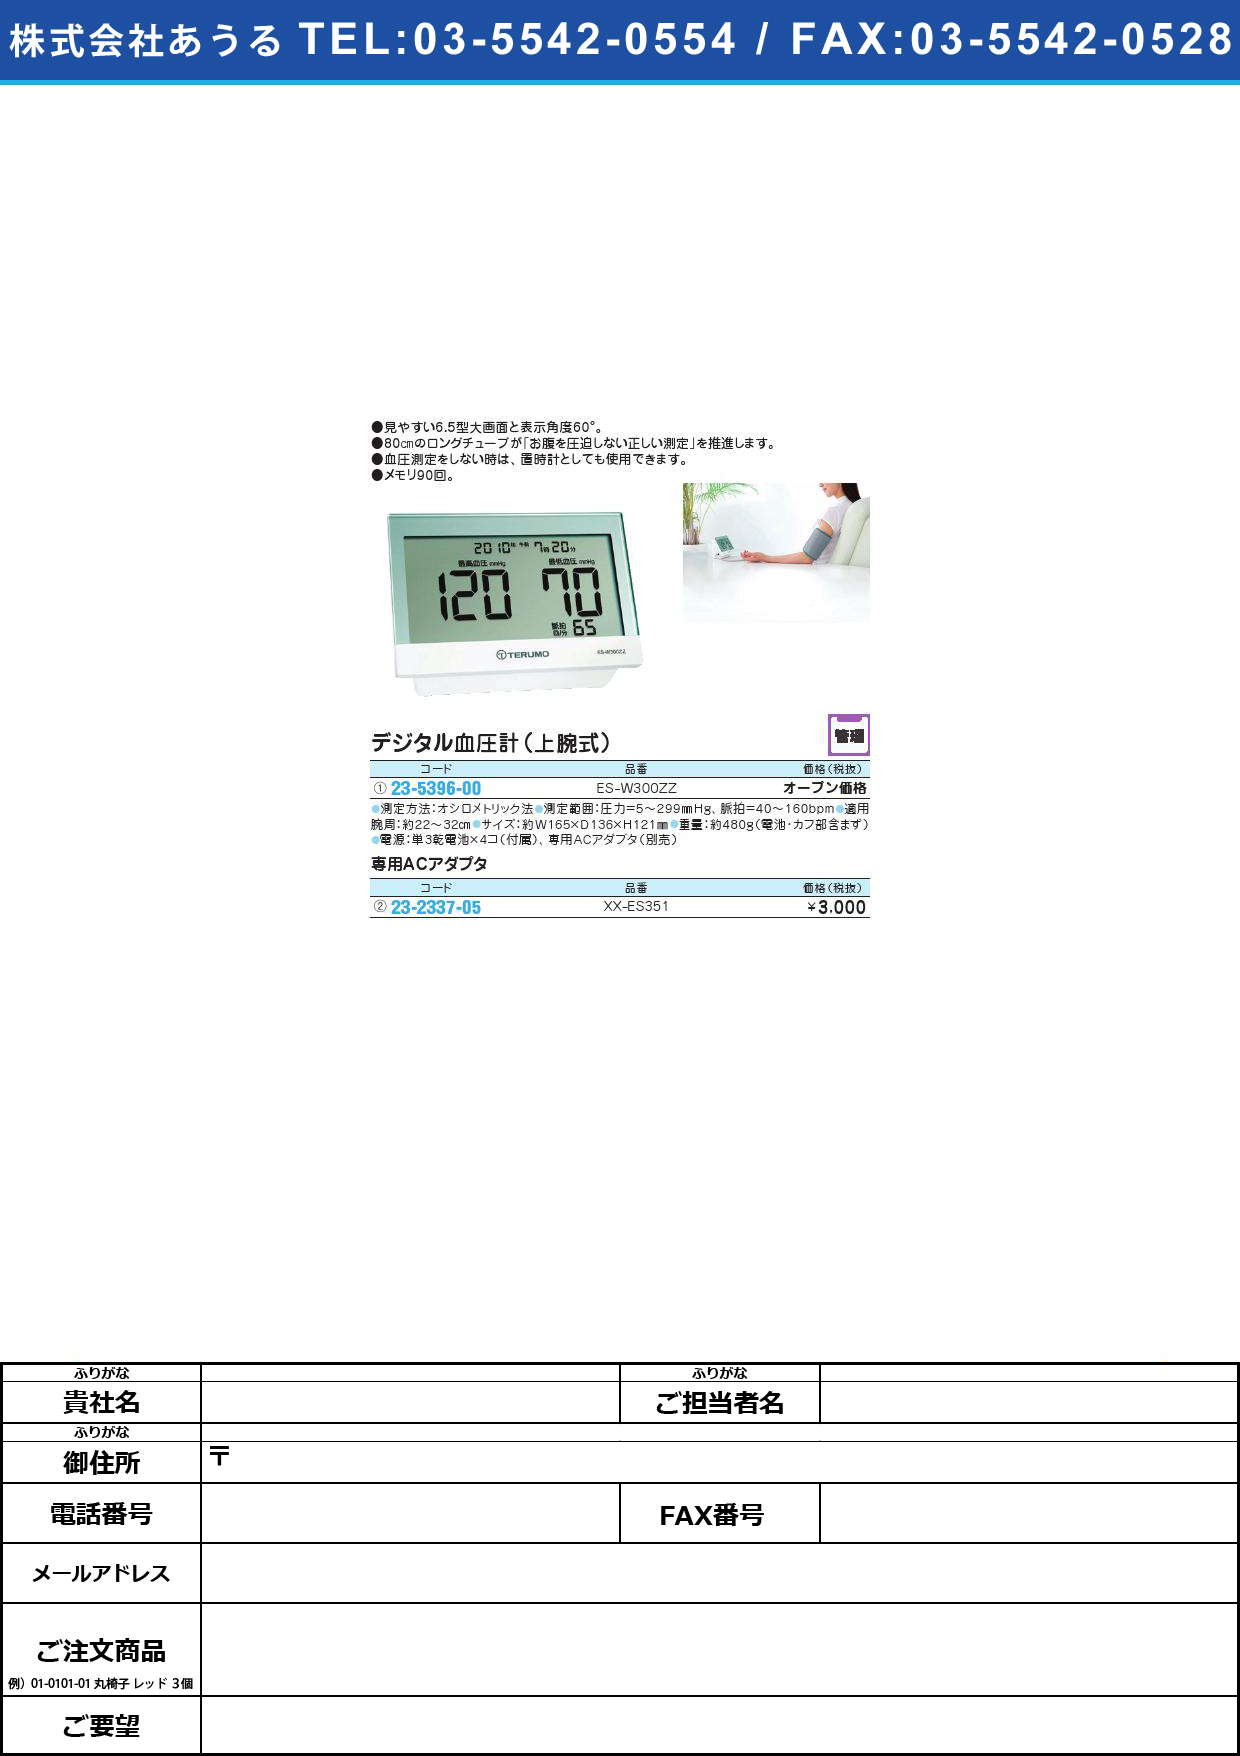 (23-5396-00)電子血圧計（上腕式） ES-W300ZZﾃﾞﾝｼｹﾂｱﾂｹｲ(ｼﾞｮｳﾜﾝｼｷ)(23-5396-00)【1台単位】【2013年カタログ商品】